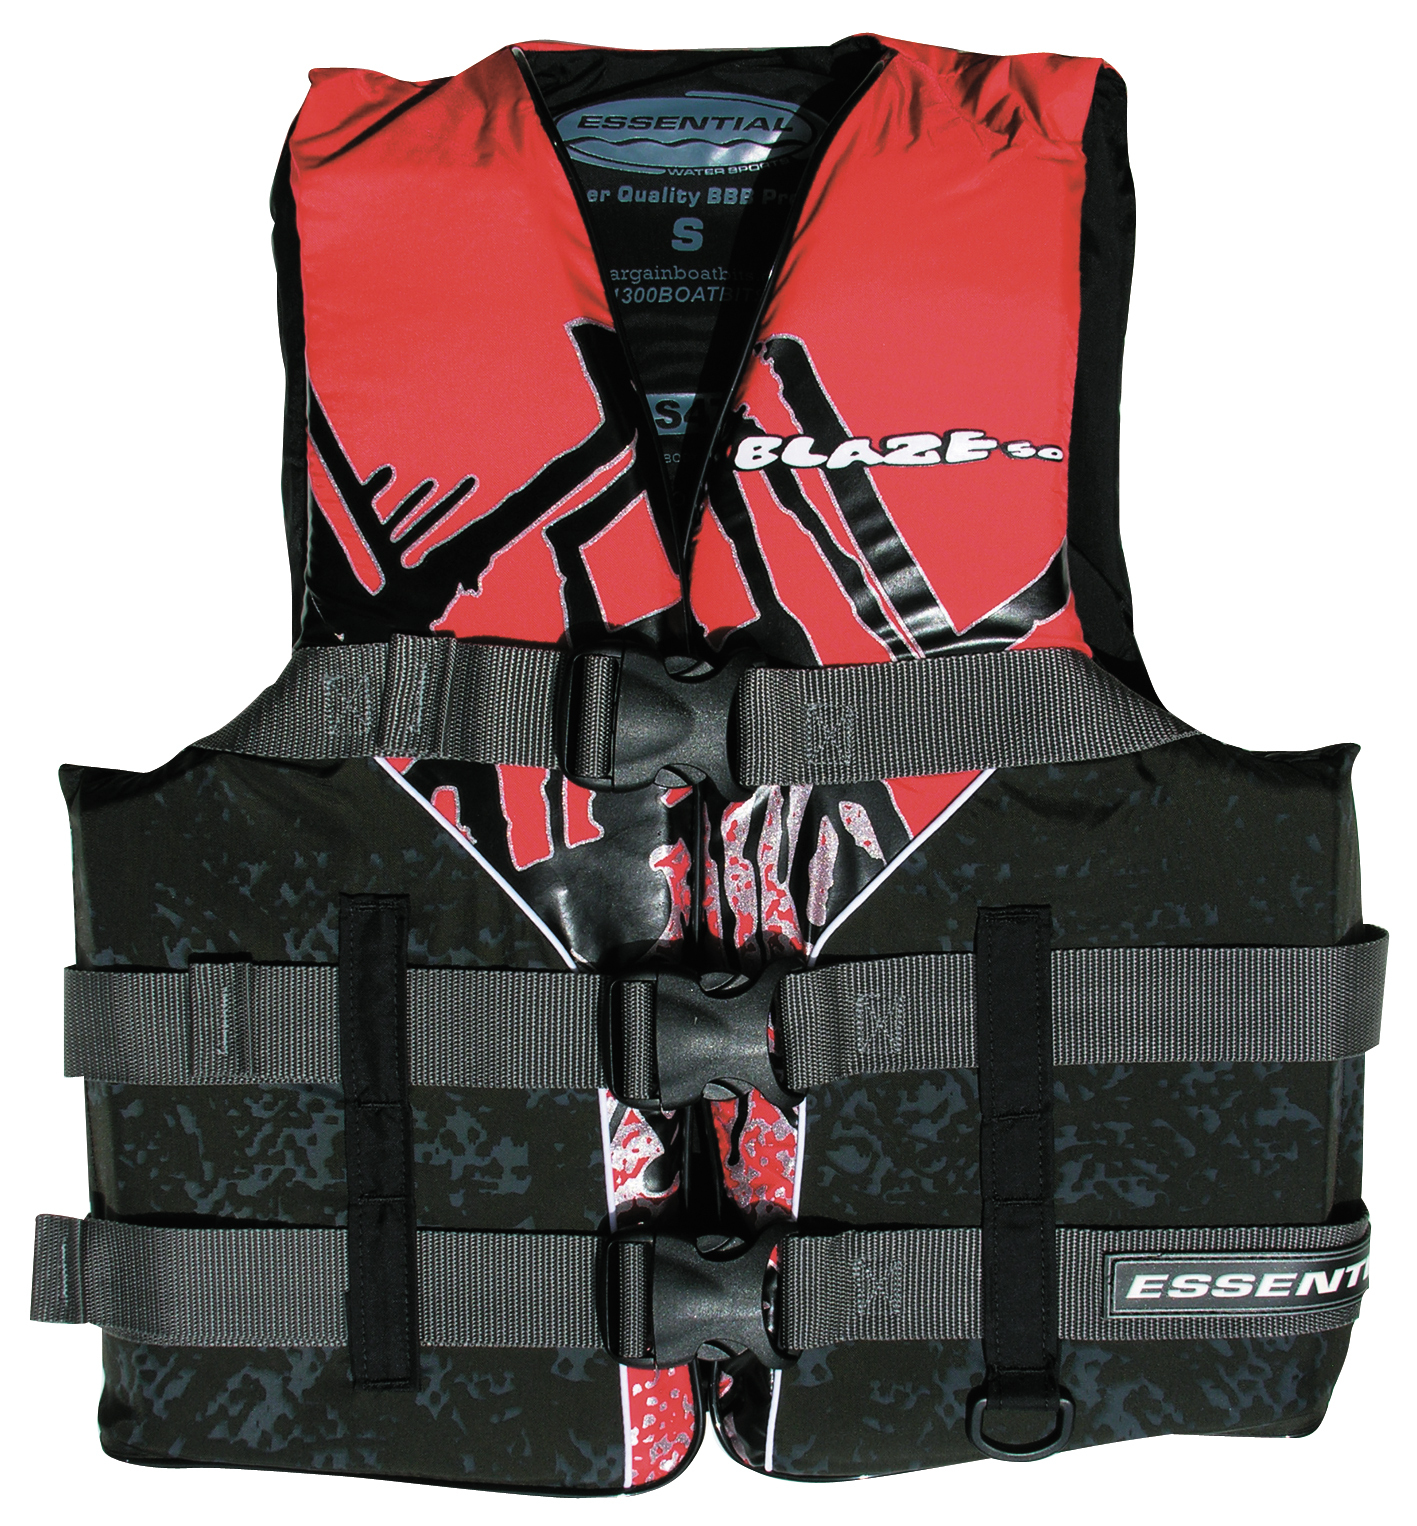 Essential Blaze L50 Adult Extra Large Ski Vest Red